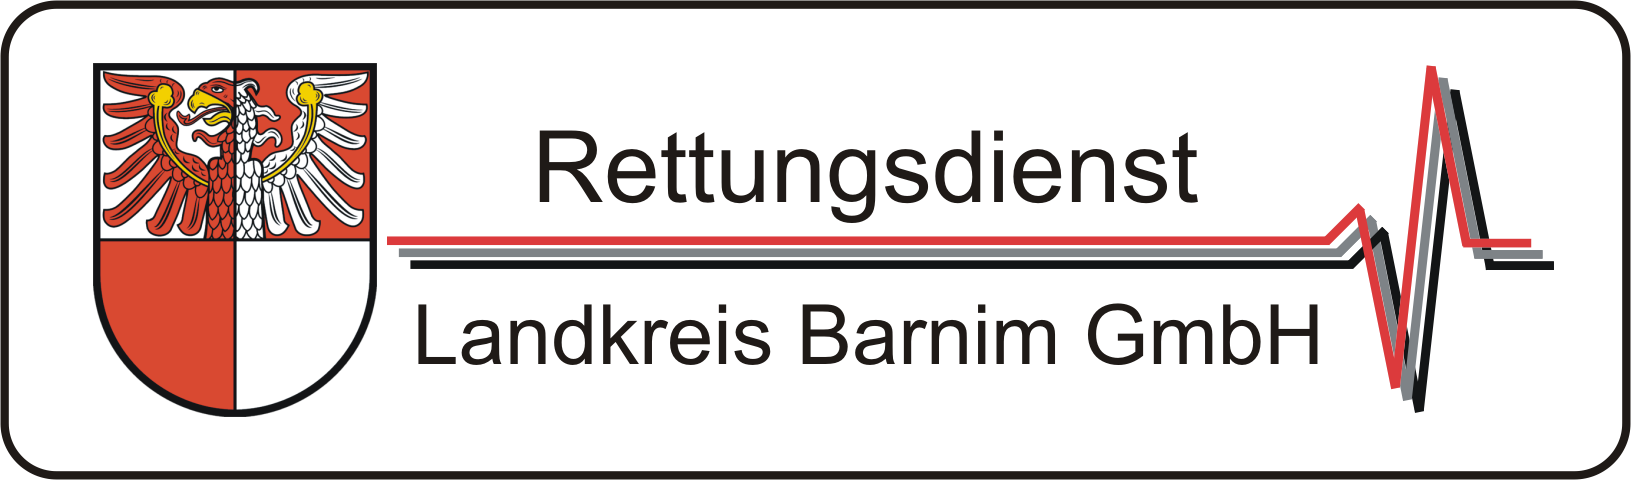 Logo Rettungsdienst Landkreis Barnim GmbH